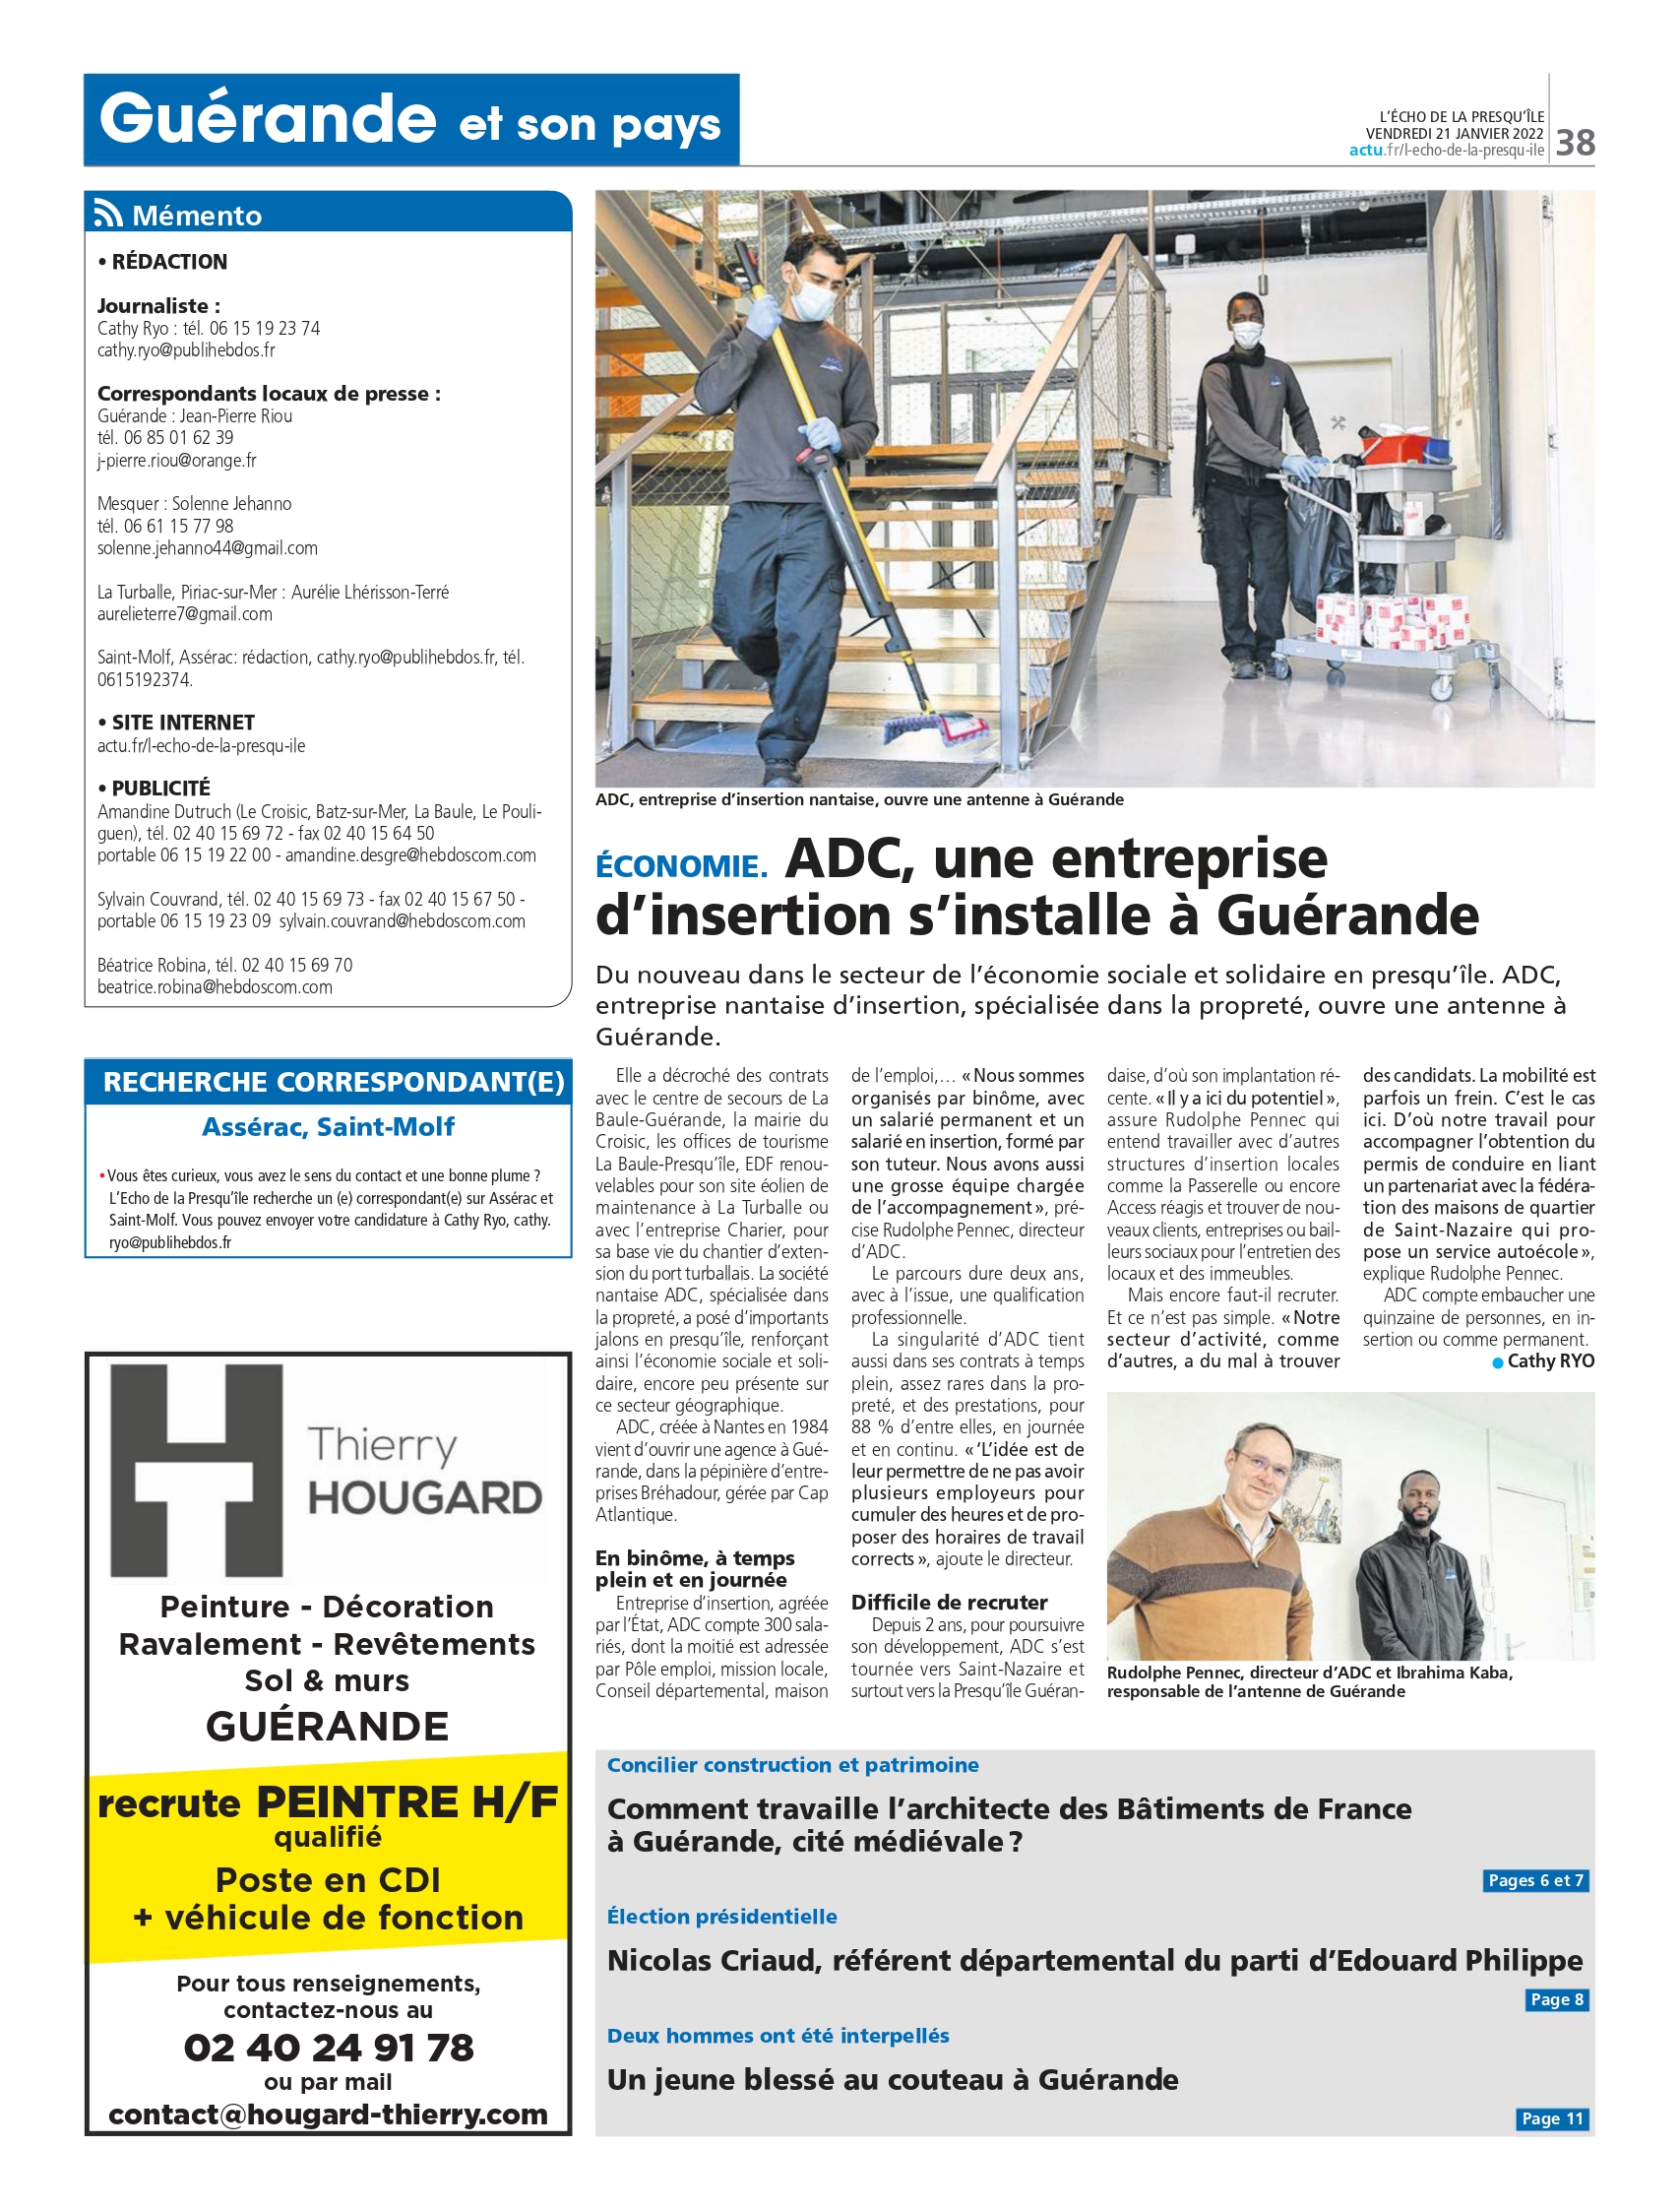 Article presse : l'implantation d'ADC sur le territoire Guérandais